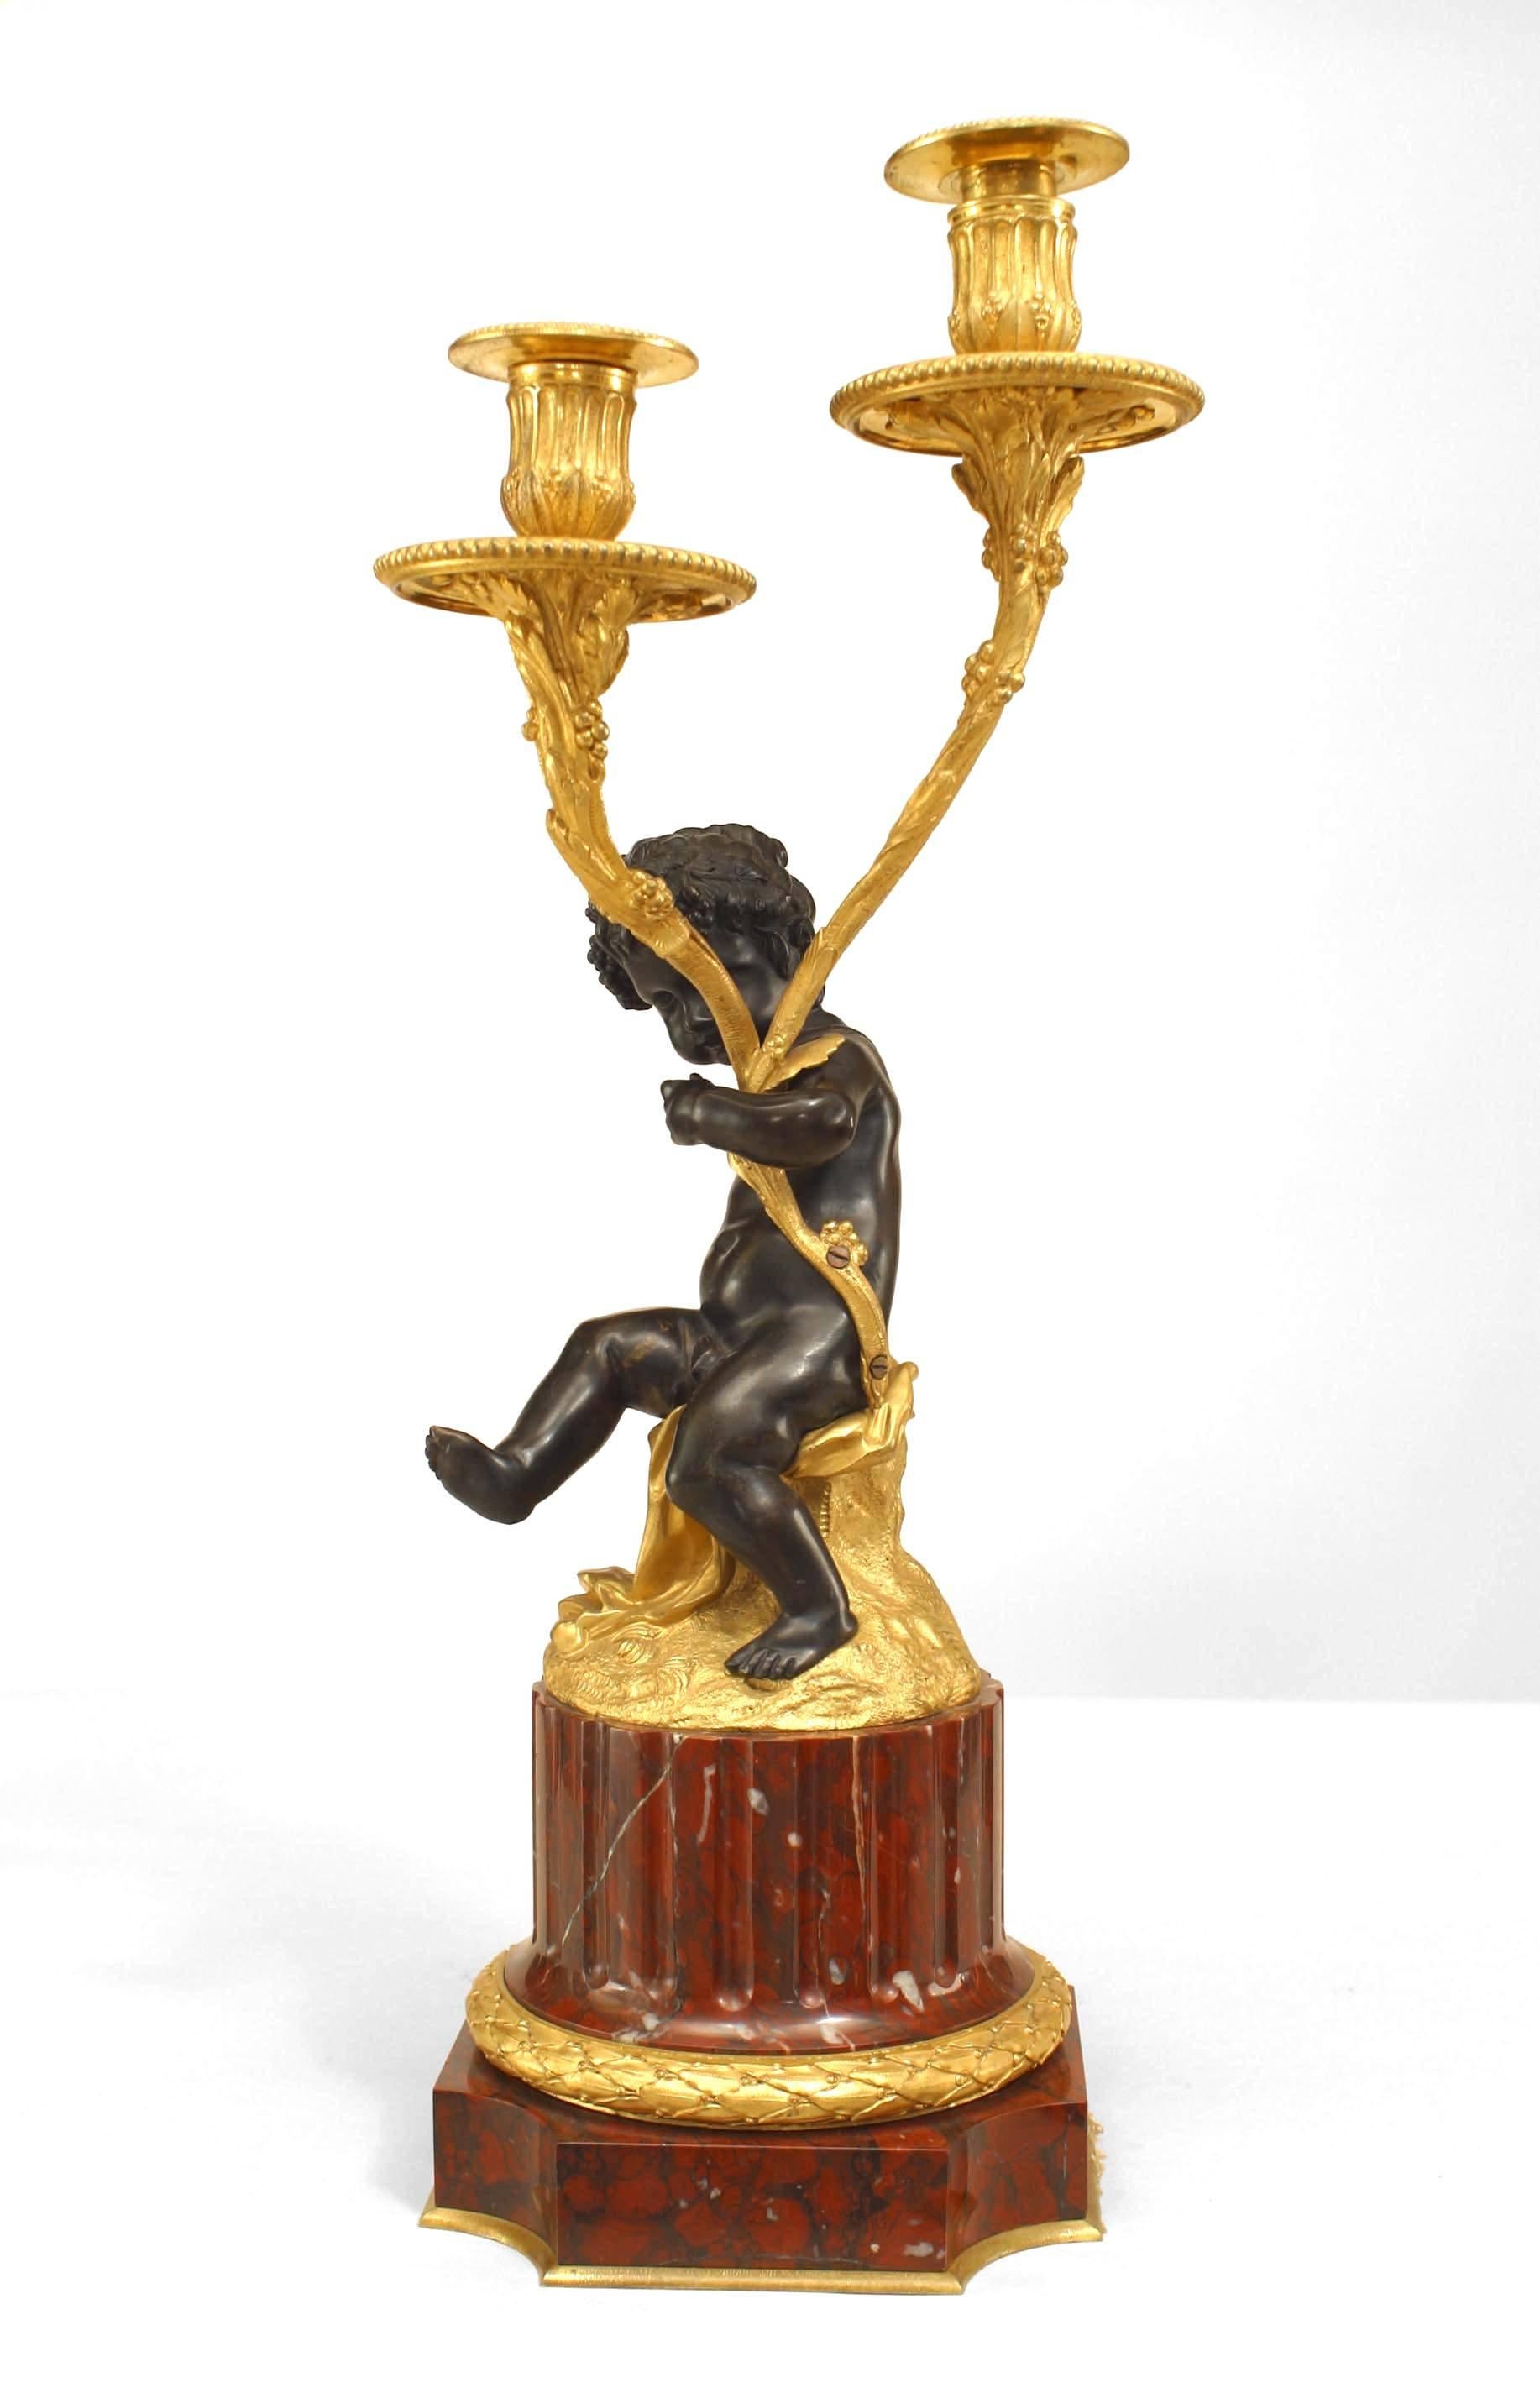 Paar vergoldete und patinierte Bronzekandelaber im französischen Louis XVI-Stil (19. Jahrhundert) mit einer Amor/Satyr-Figur, die 2 blattgeschmückte Arme hält und auf Sockeln aus rougefarbenem Marmor steht (PREIS PRO PÄRCHEN)
